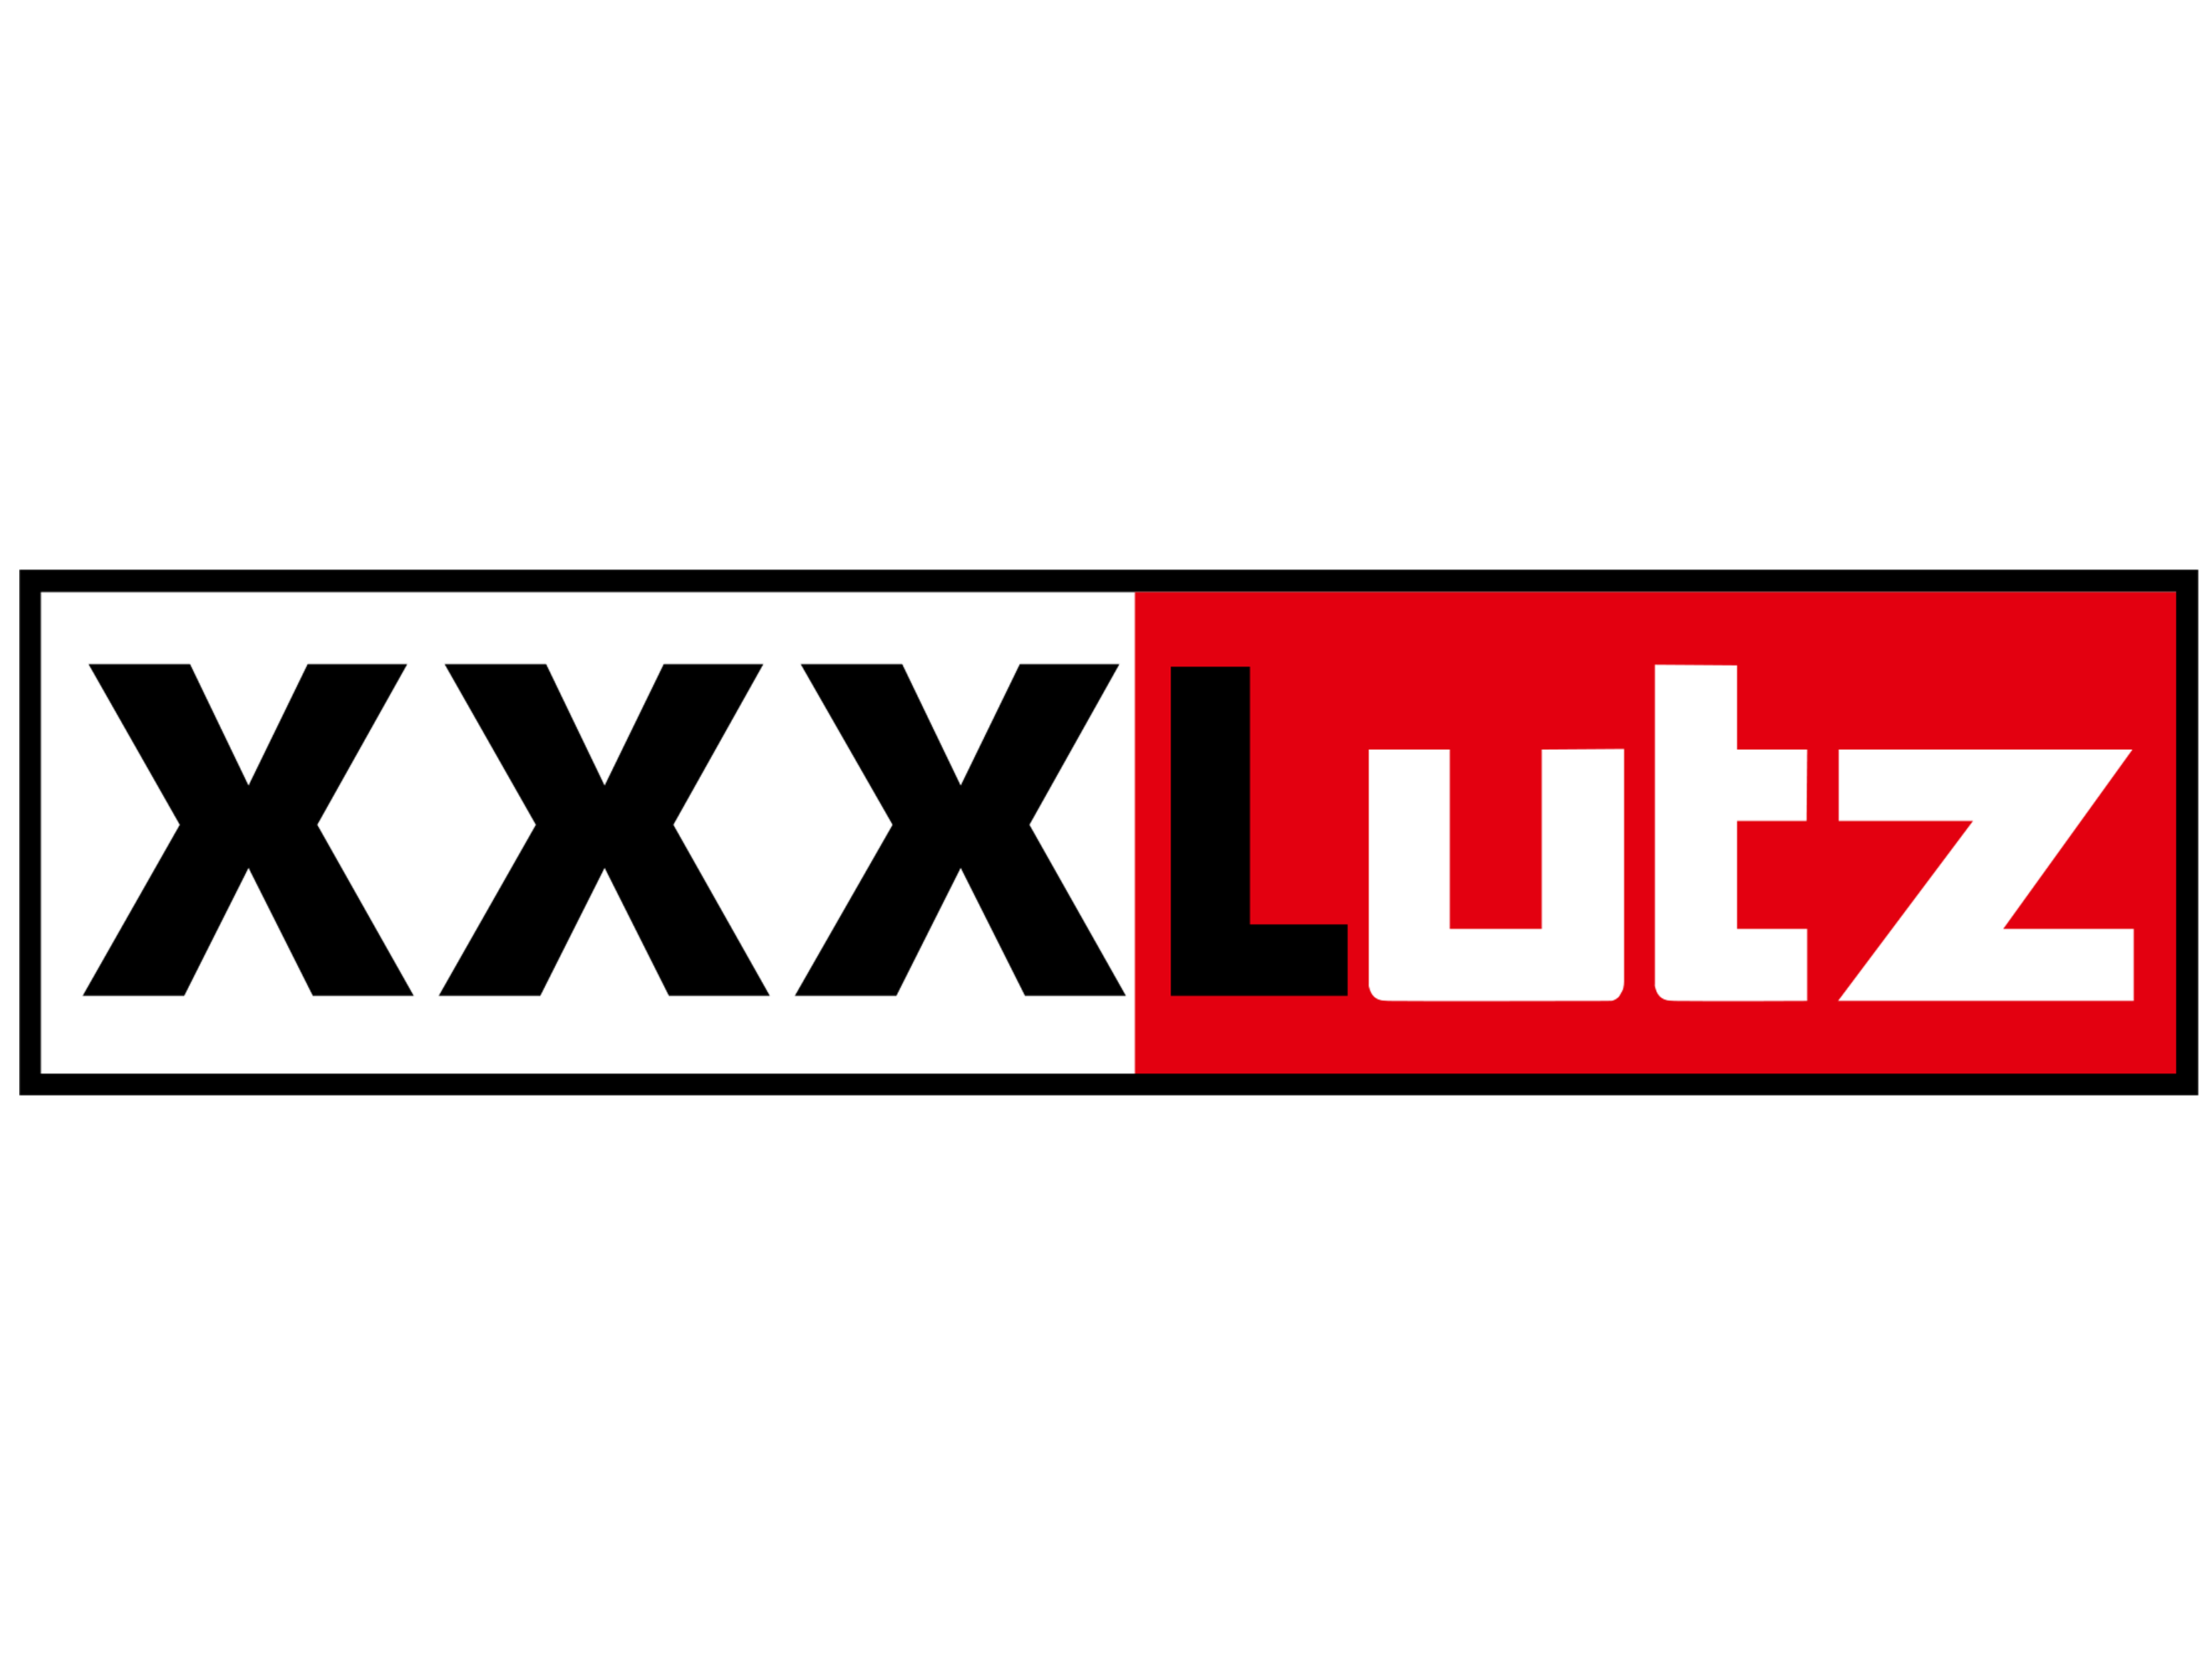 Xxx lutz